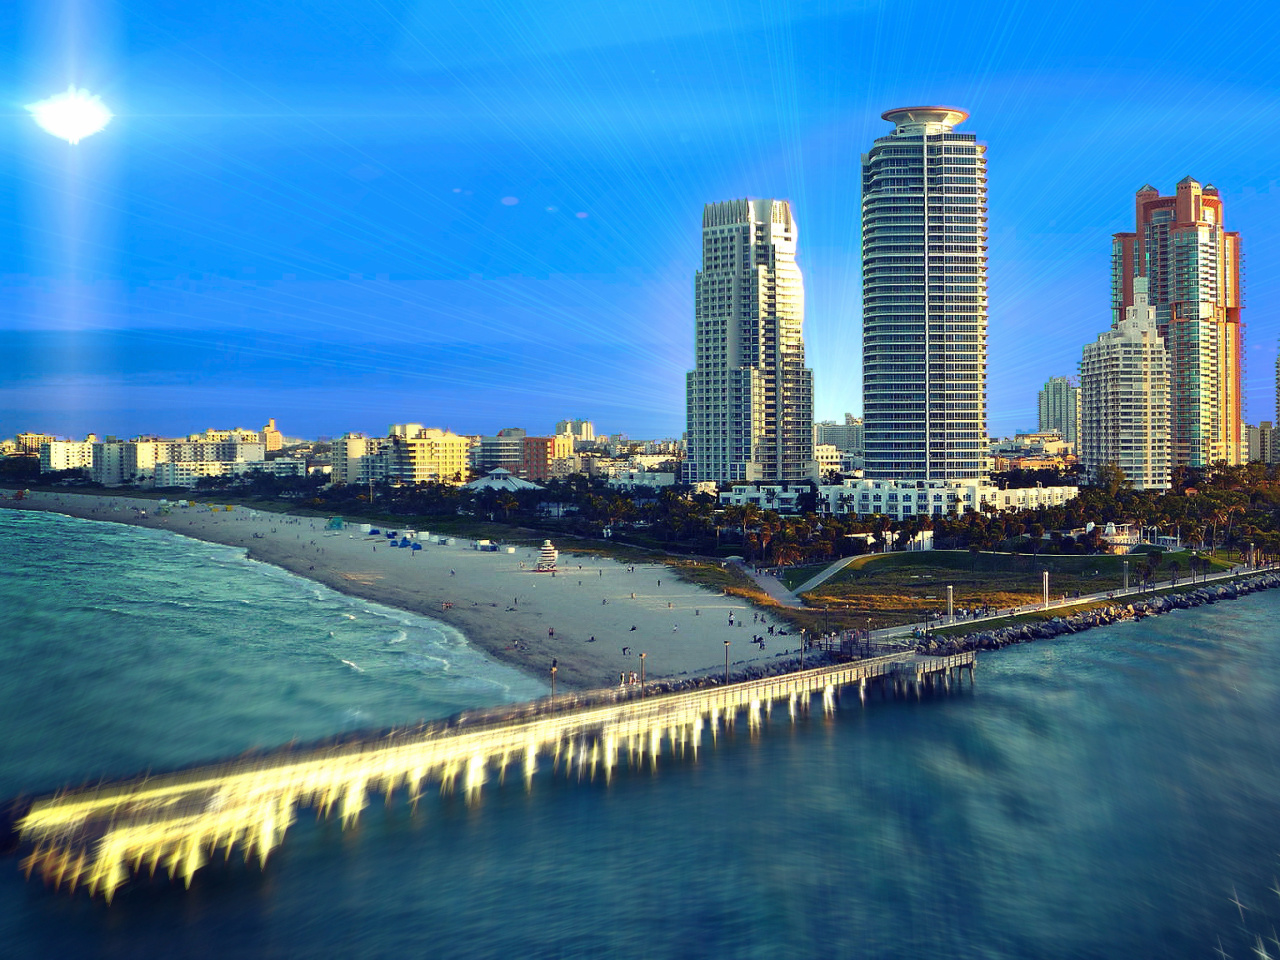 Обои Miami Beach with Hotels 1280x960